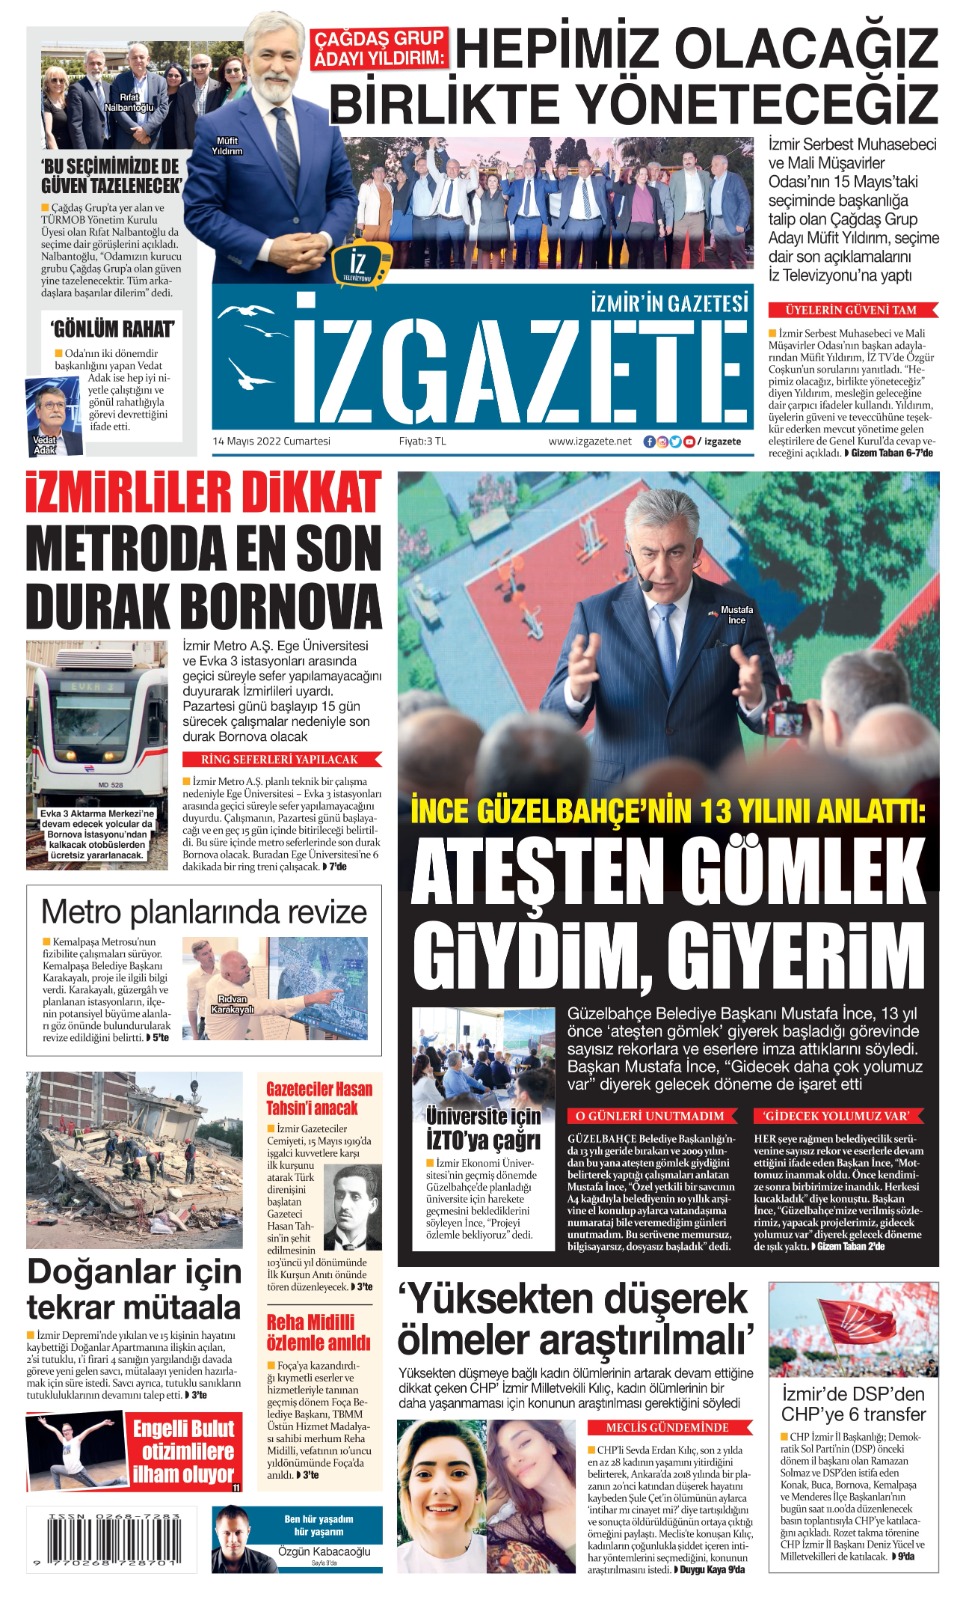 İz Gazete - İzmir'in Gazetesi - 14.05.2022 Manşeti